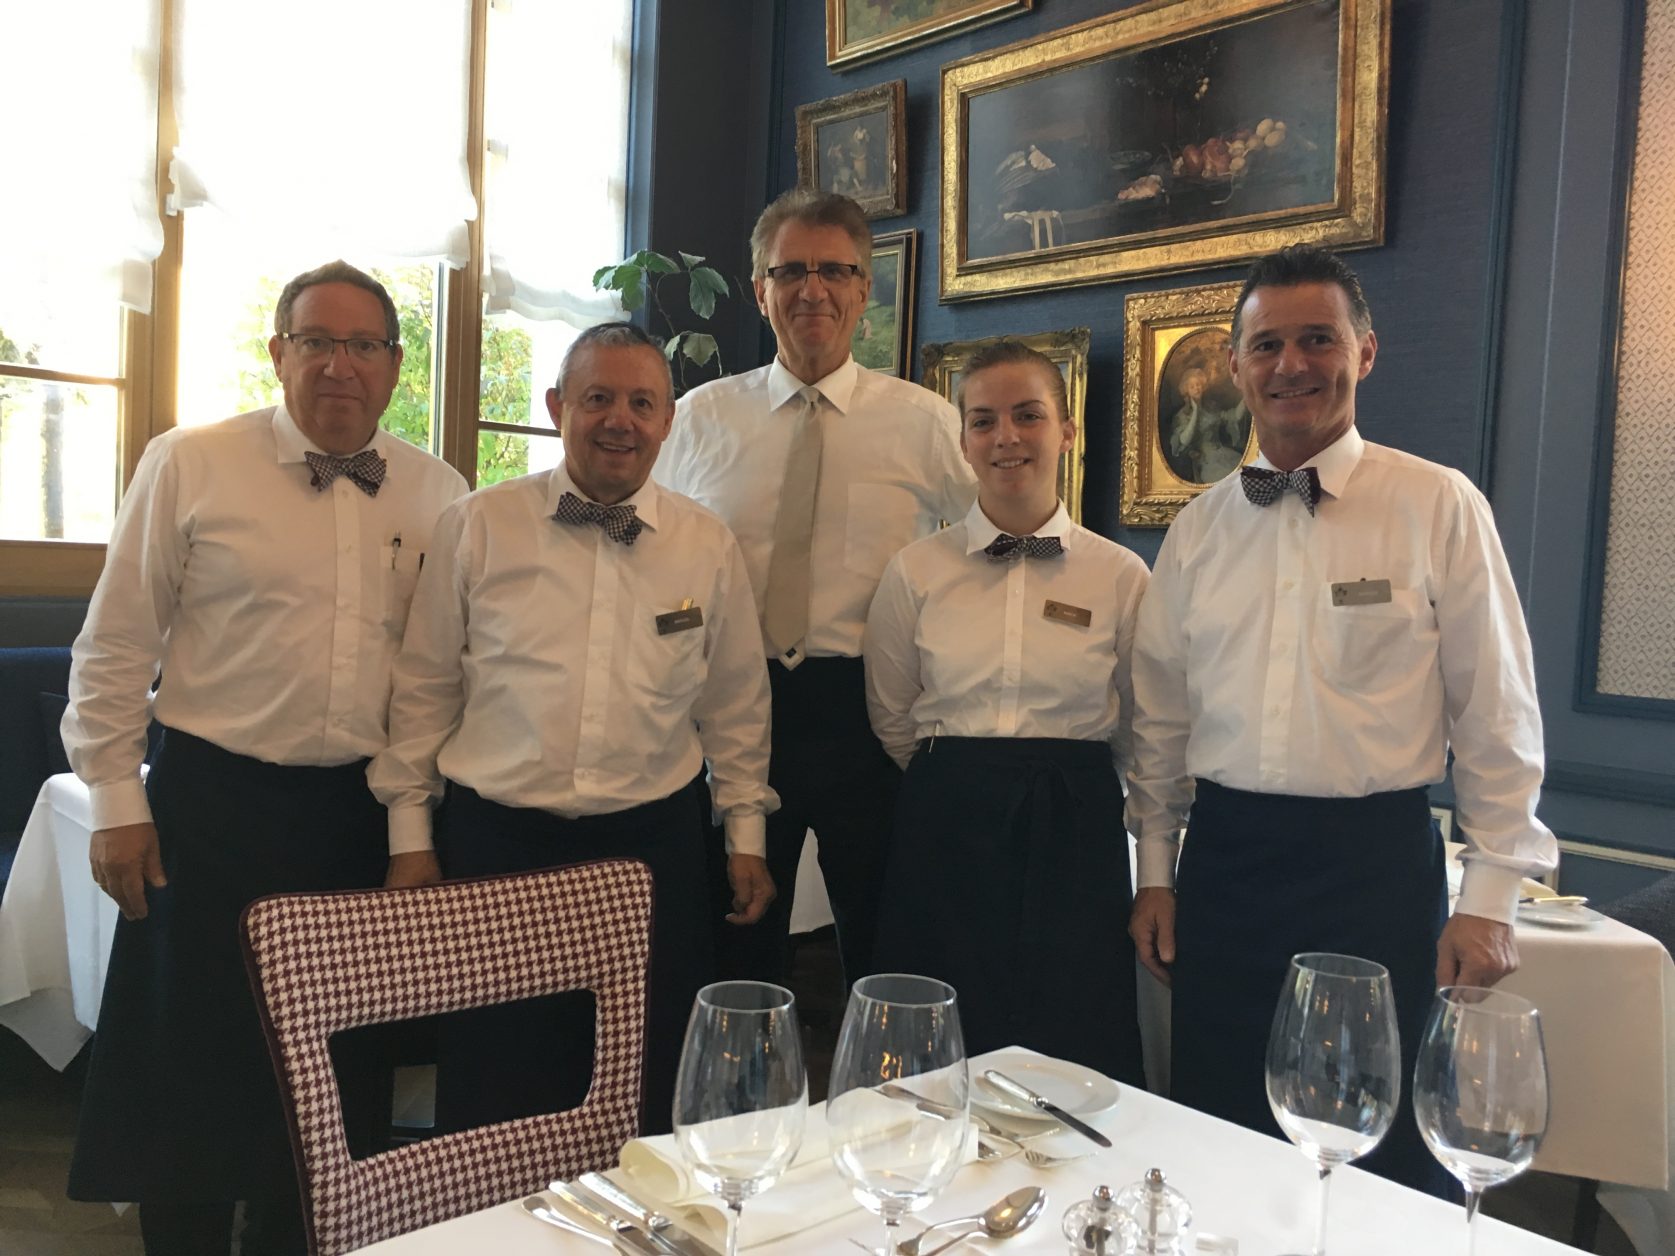 Immer für die Gäste da: das erfahrene Service-Team im Hotel Walther in Pontresina, Foto: Weirauch